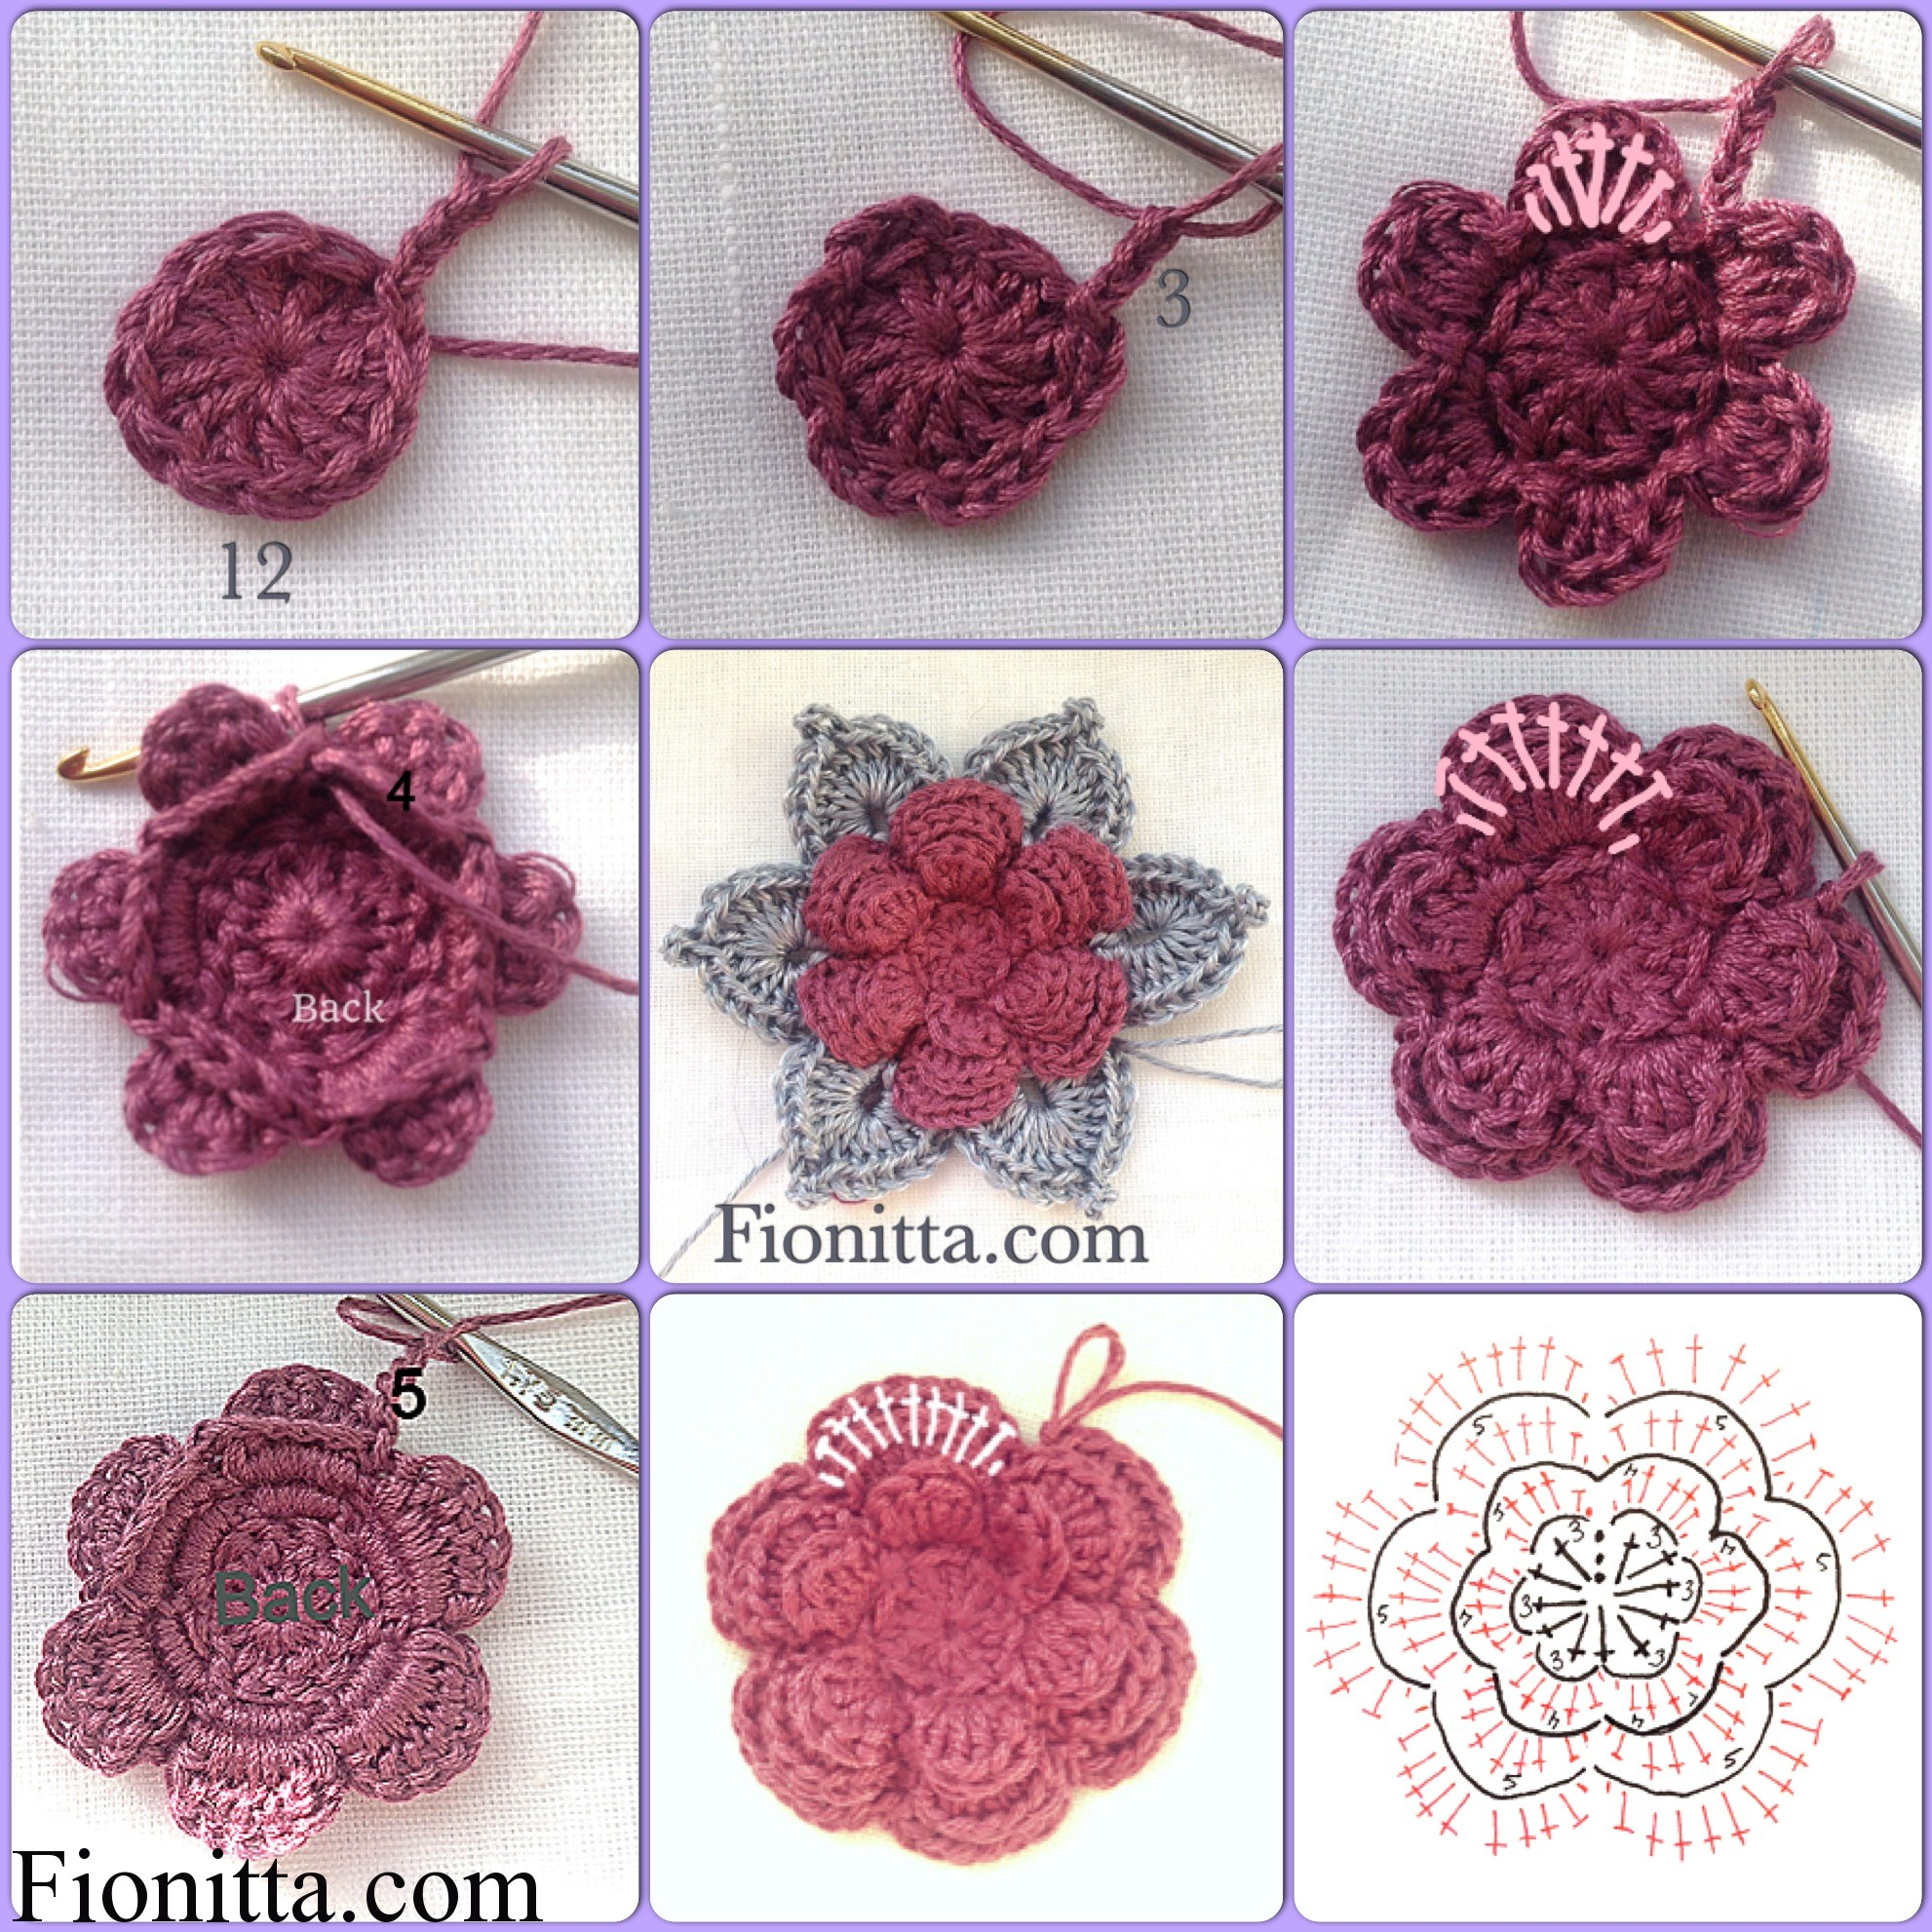 Crochet Flowers Pattern Crochet Flowers Fionitta Crochet